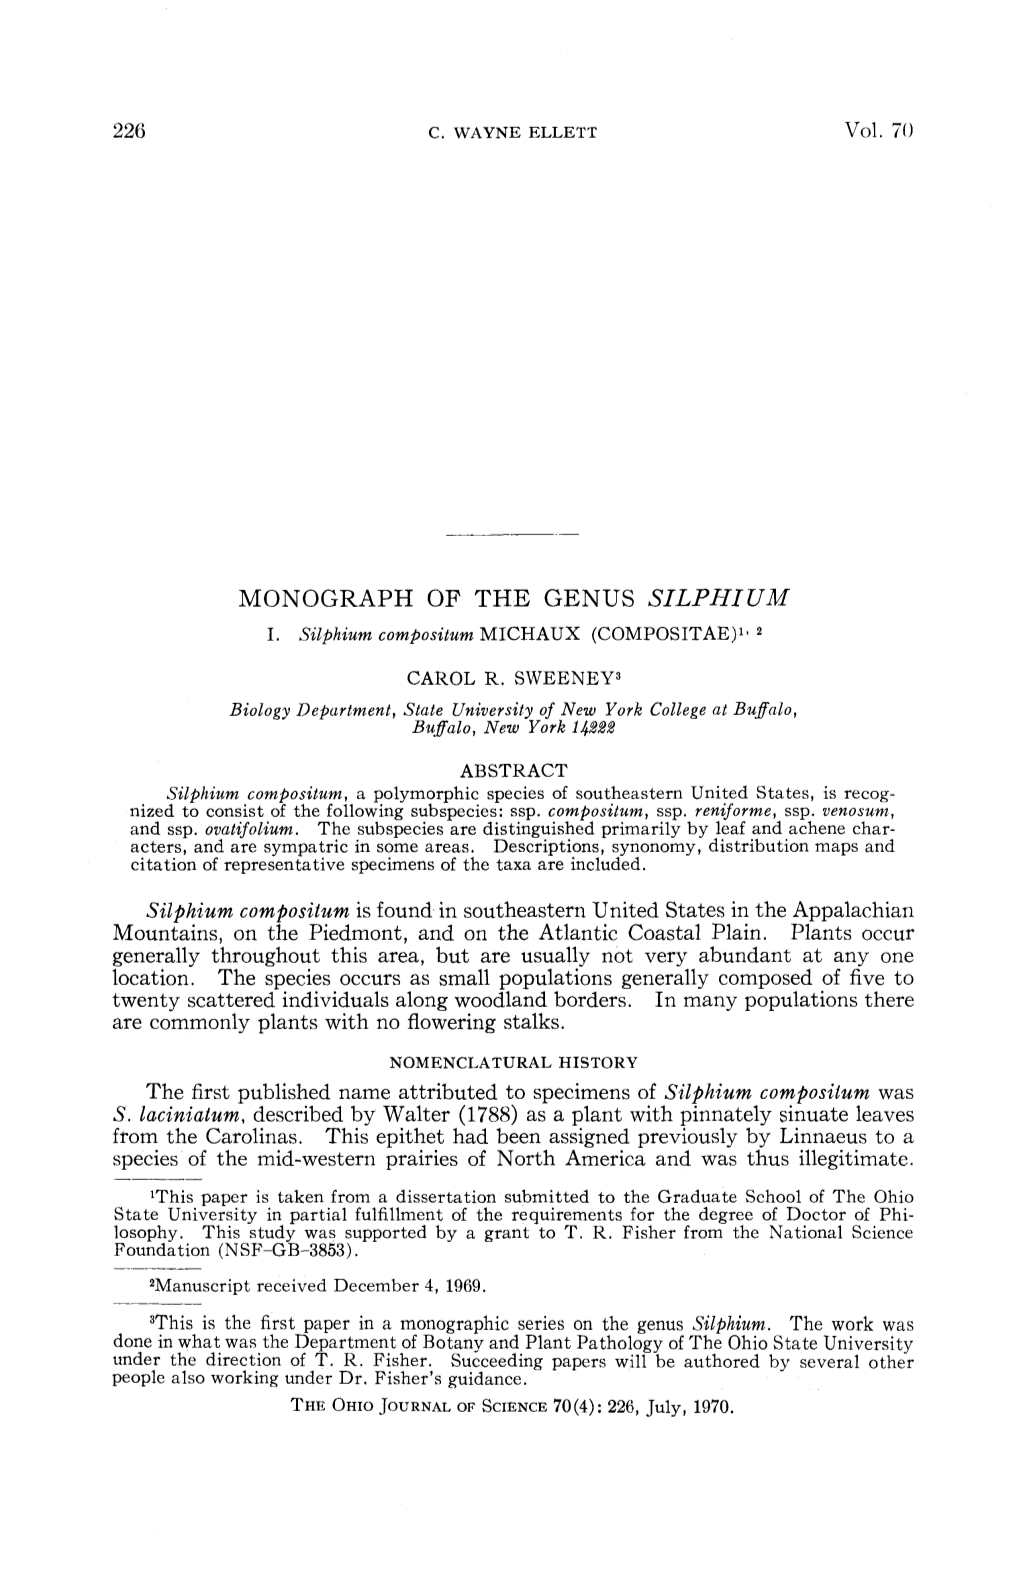 Monography of the Genus Silphium : I. Silphium Composium Michaux